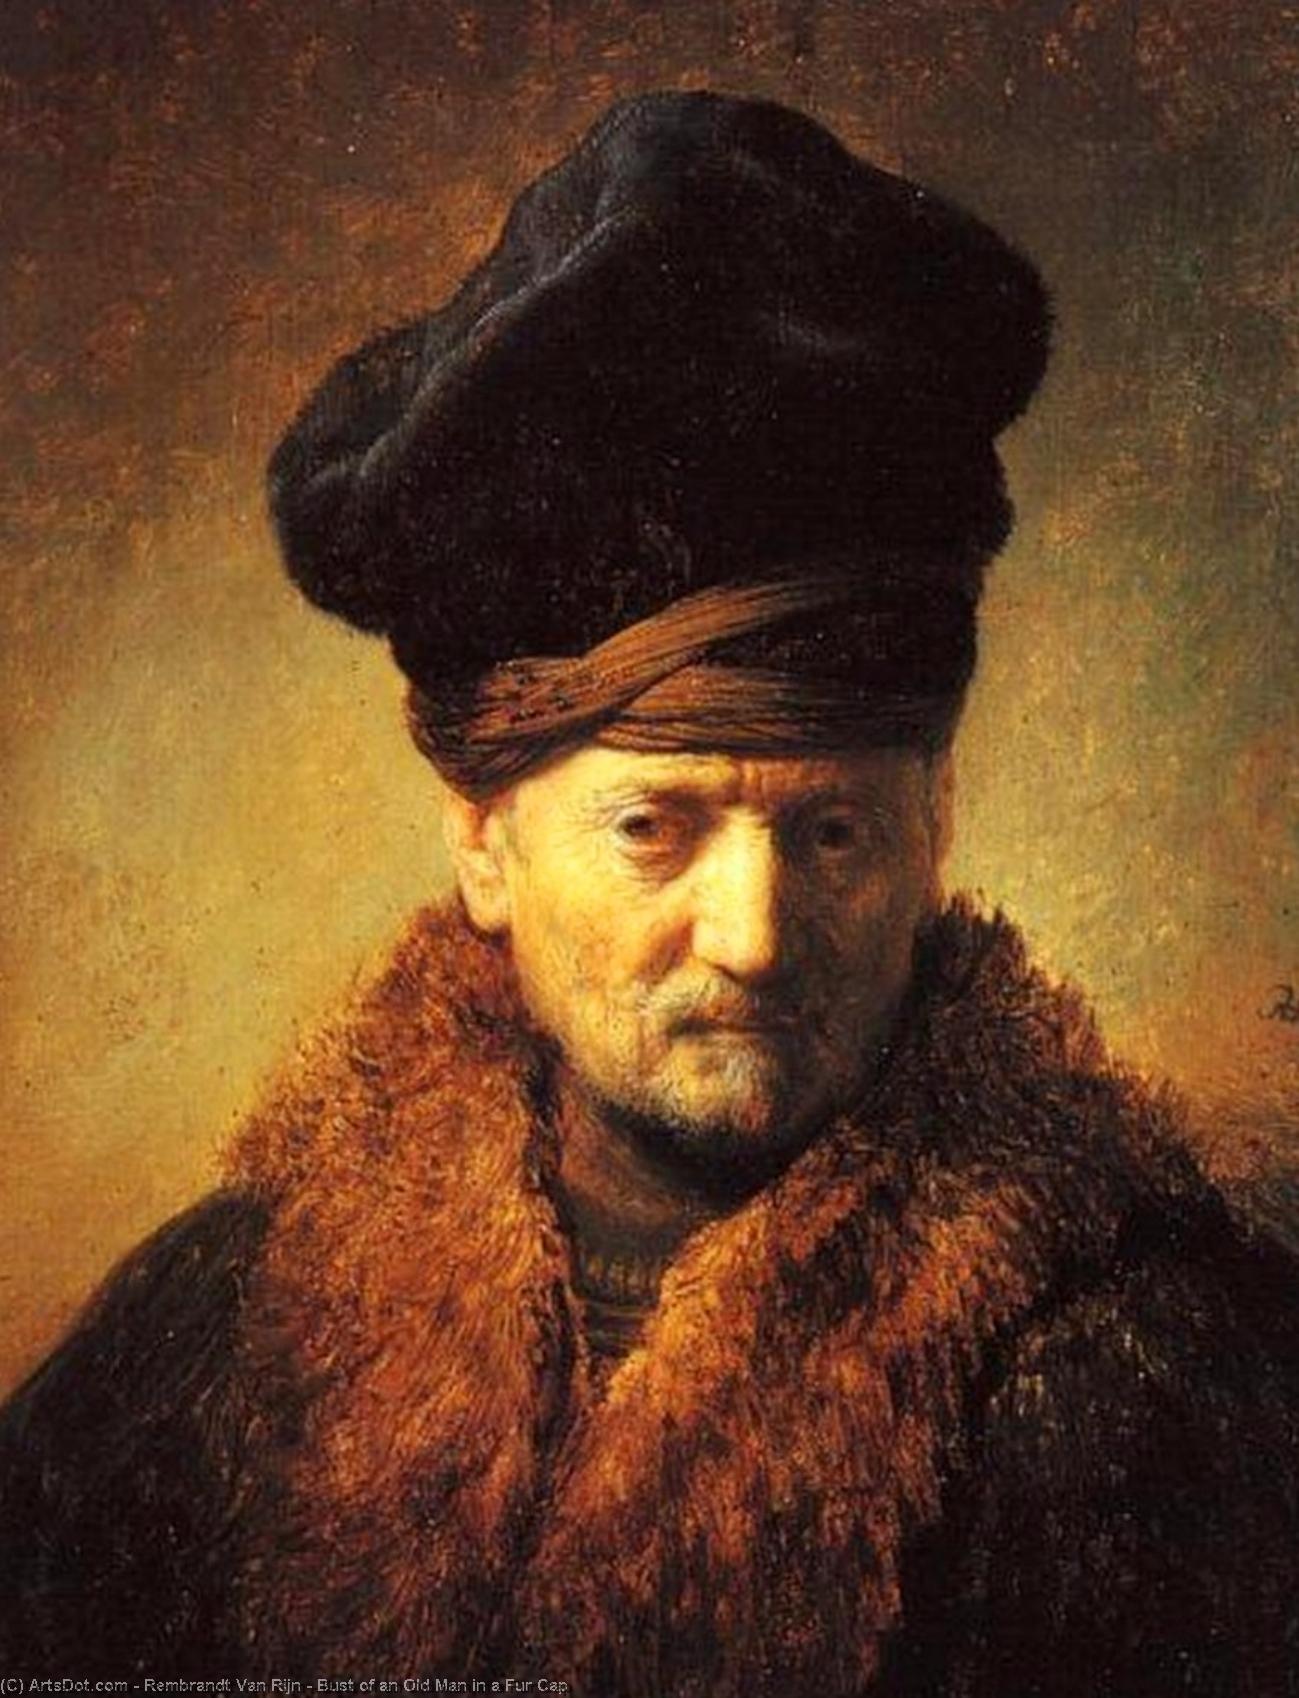 WikiOO.org - Enciclopédia das Belas Artes - Pintura, Arte por Rembrandt Van Rijn - Bust of an Old Man in a Fur Cap